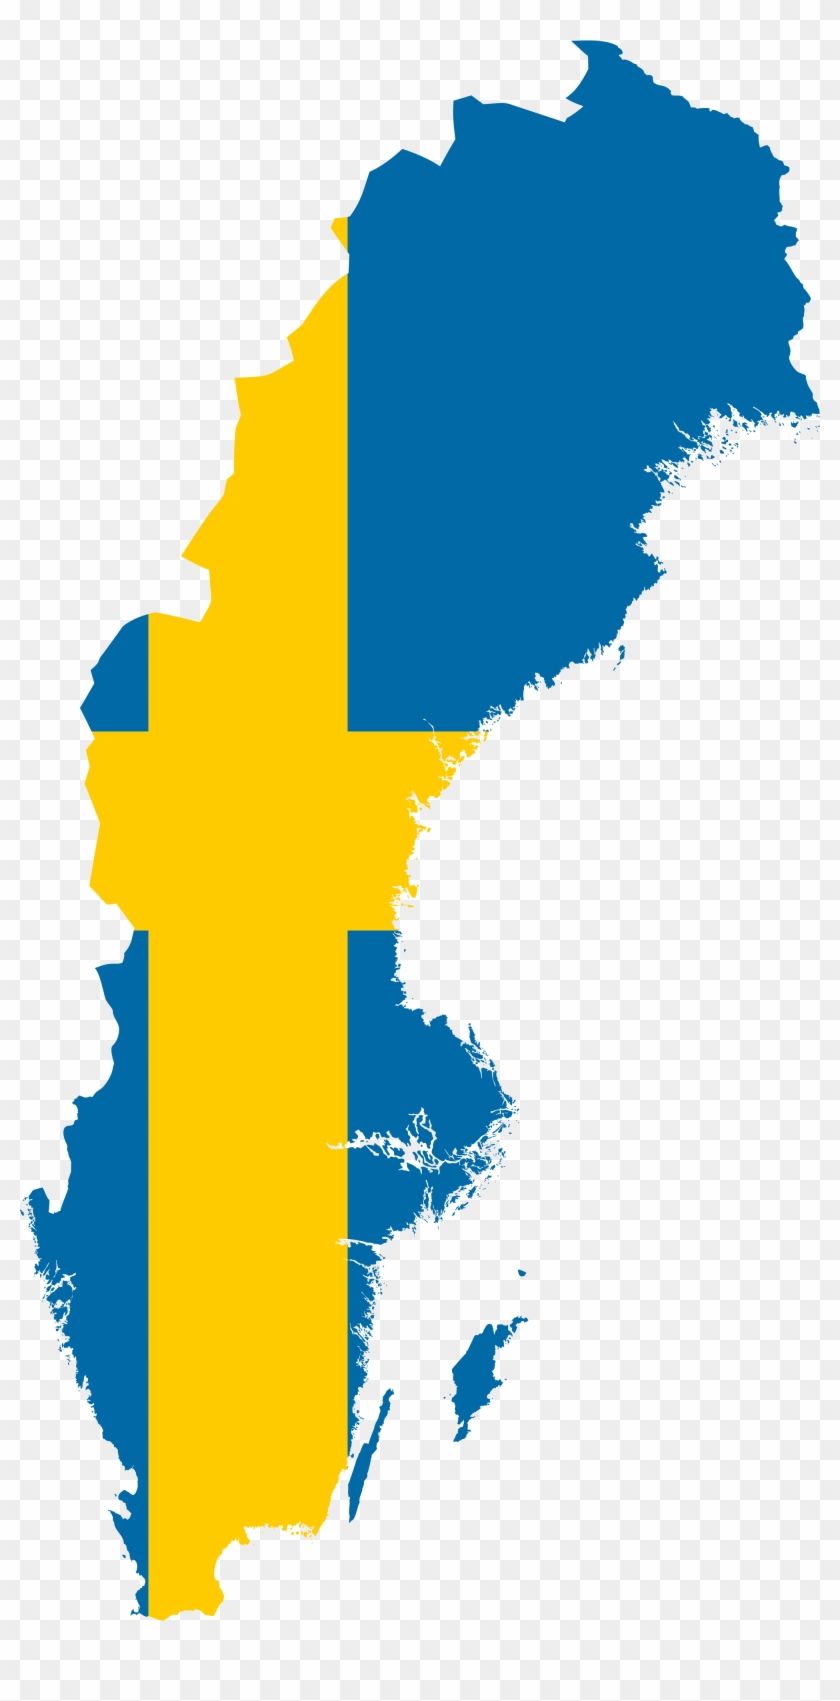 Clip Art Flag Of Sweden - Sweden Map Png #1355455